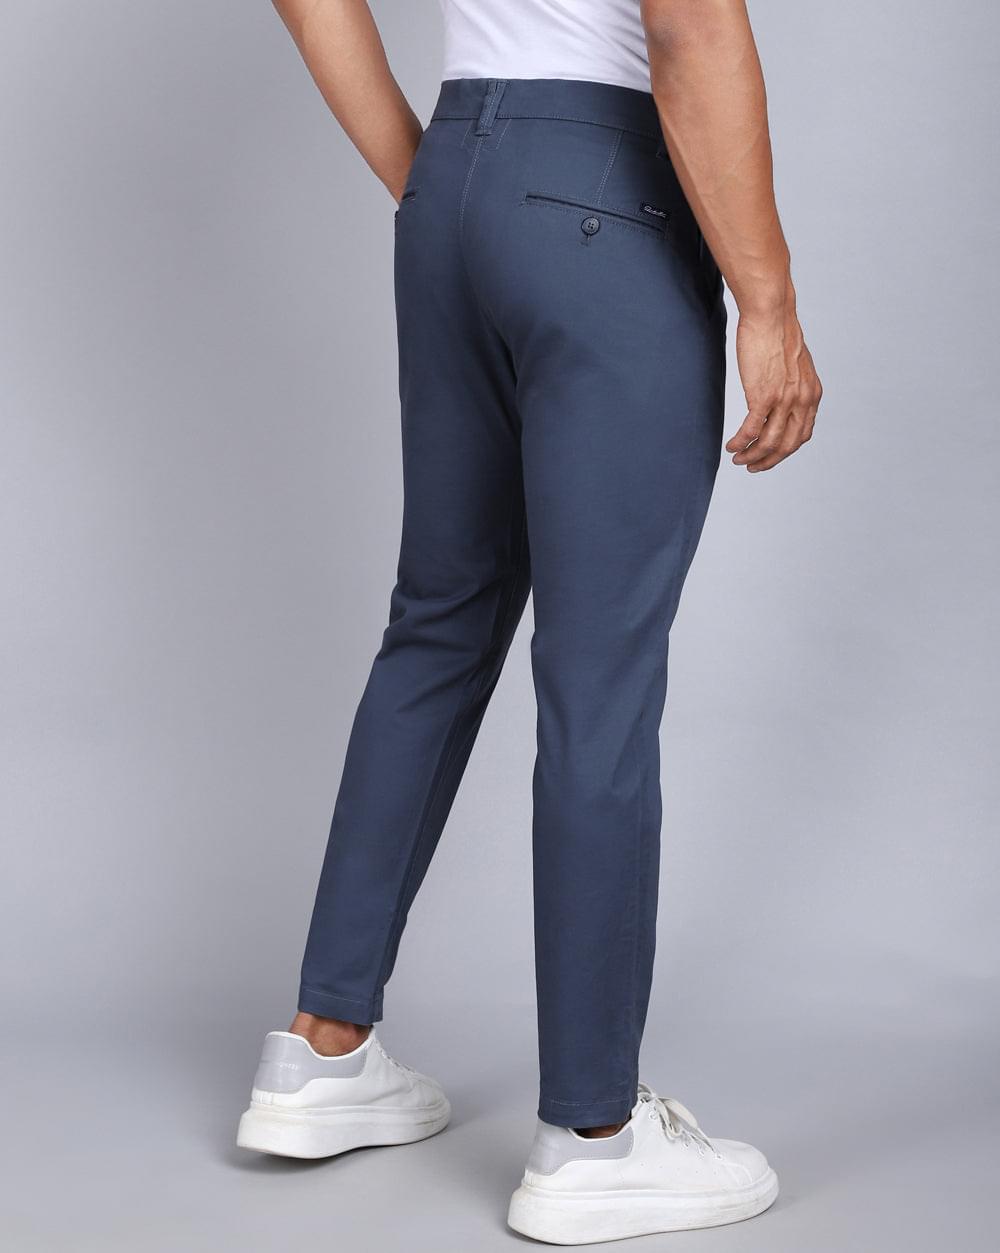 2021winter casual pants men slim fit| Alibaba.com